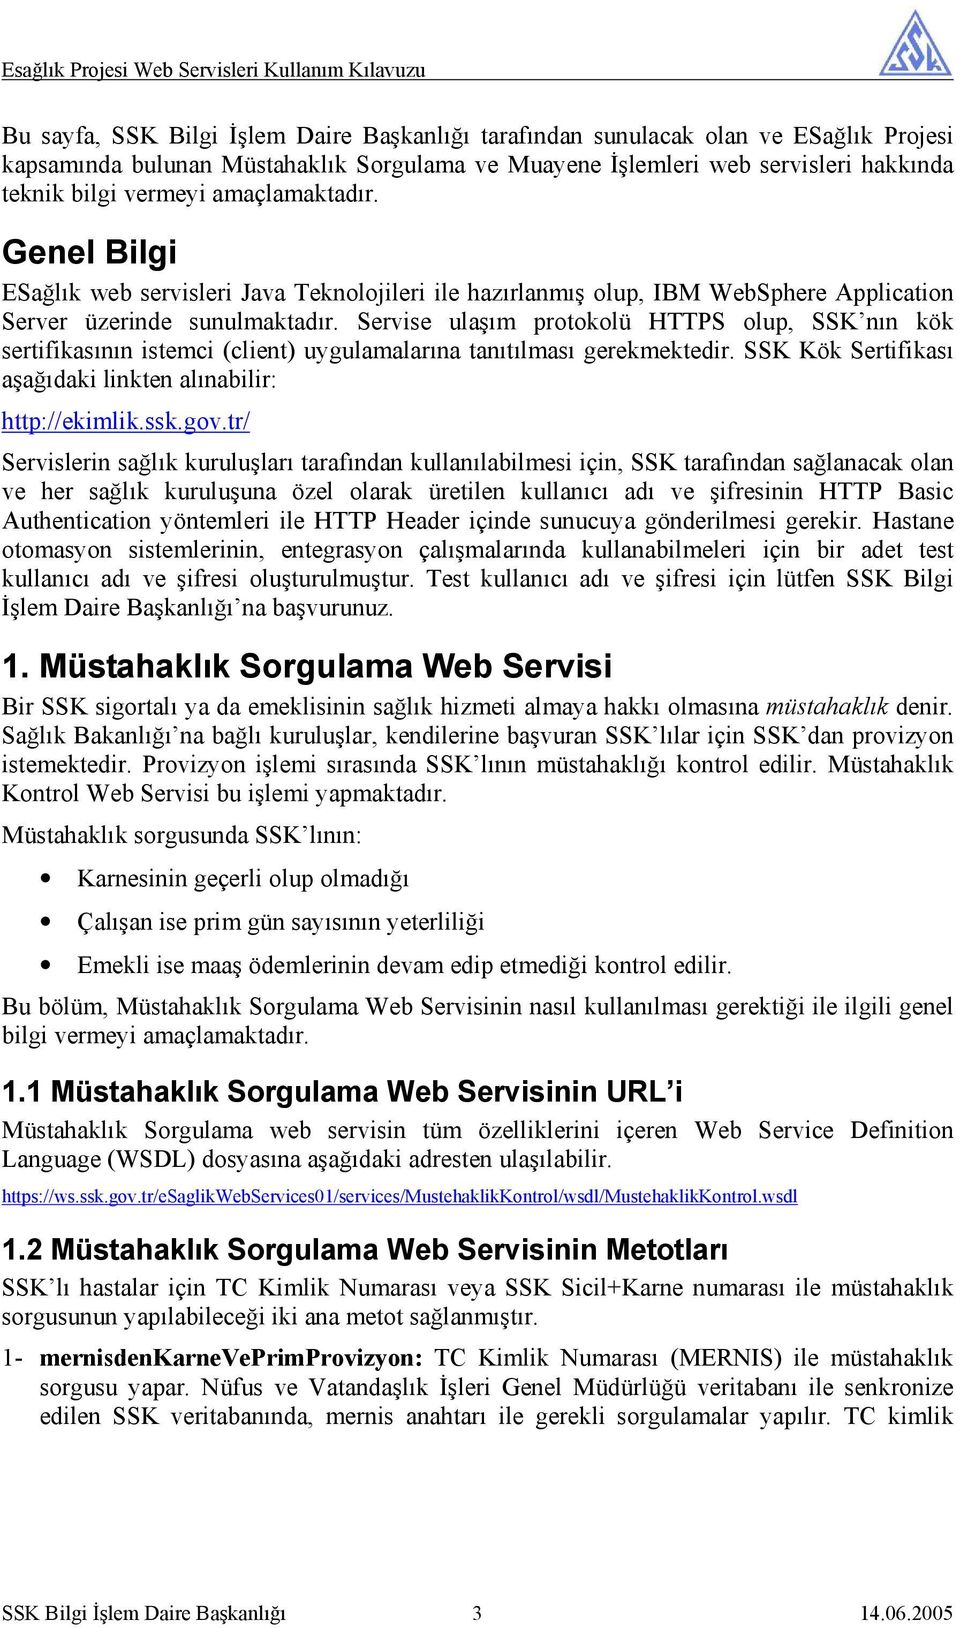 Servise ulaşım protokolü HTTPS olup, SSK nın kök sertifikasının istemci (client) uygulamalarına tanıtılması gerekmektedir. SSK Kök Sertifikası aşağıdaki linkten alınabilir: http://ekimlik.ssk.gov.